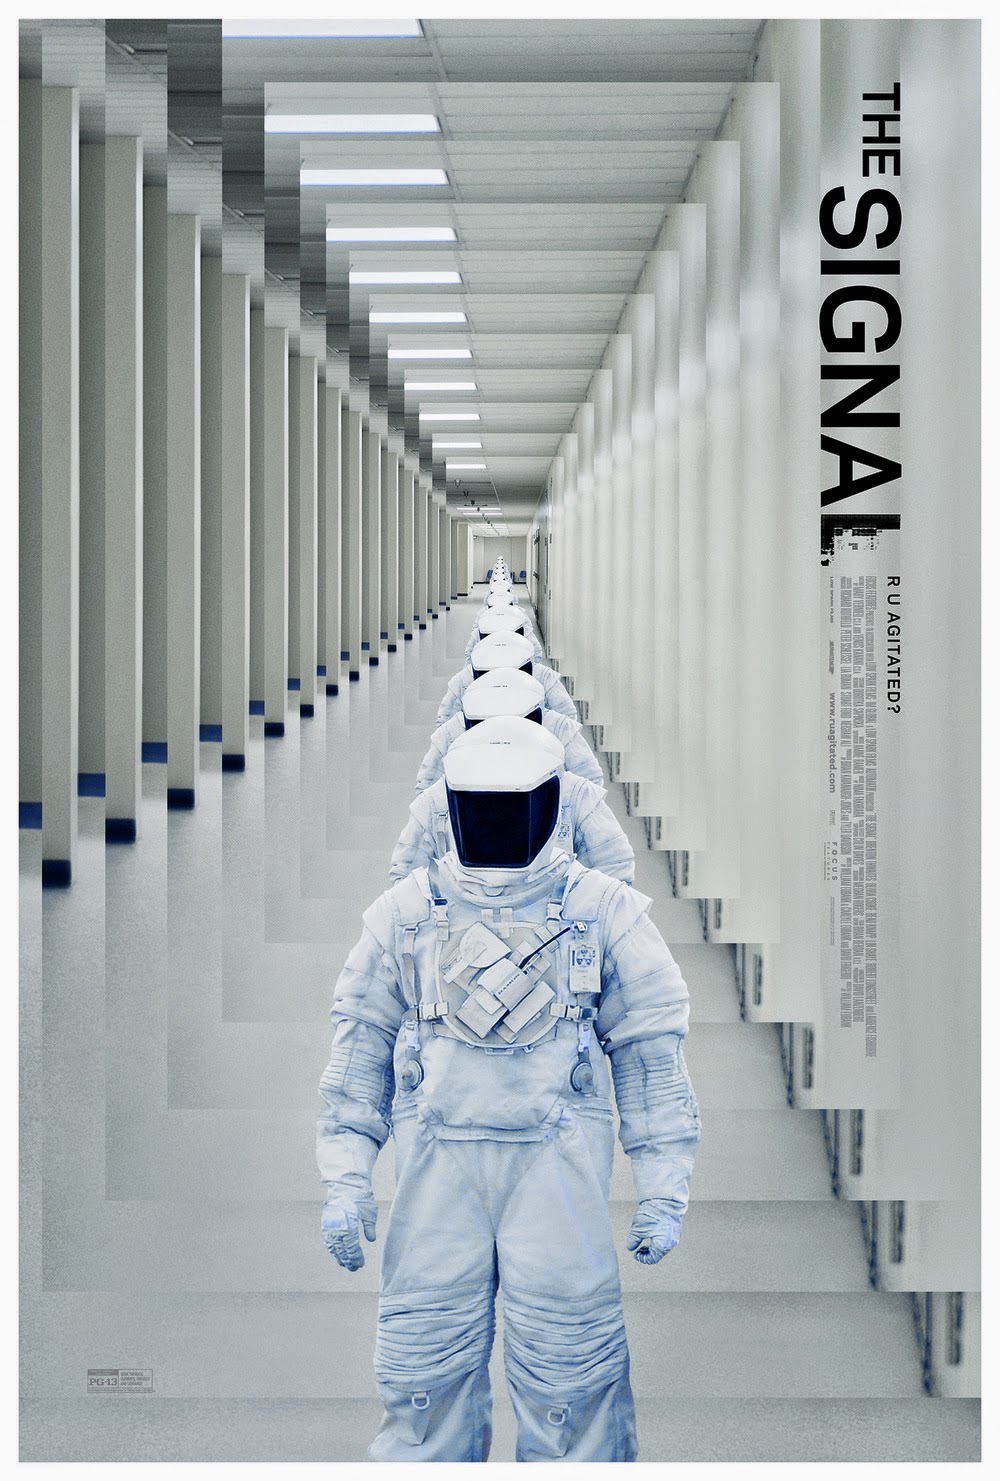 xem phim Tín Hiệu Kích Động - The Signal 2014 full hd vietsub online poster